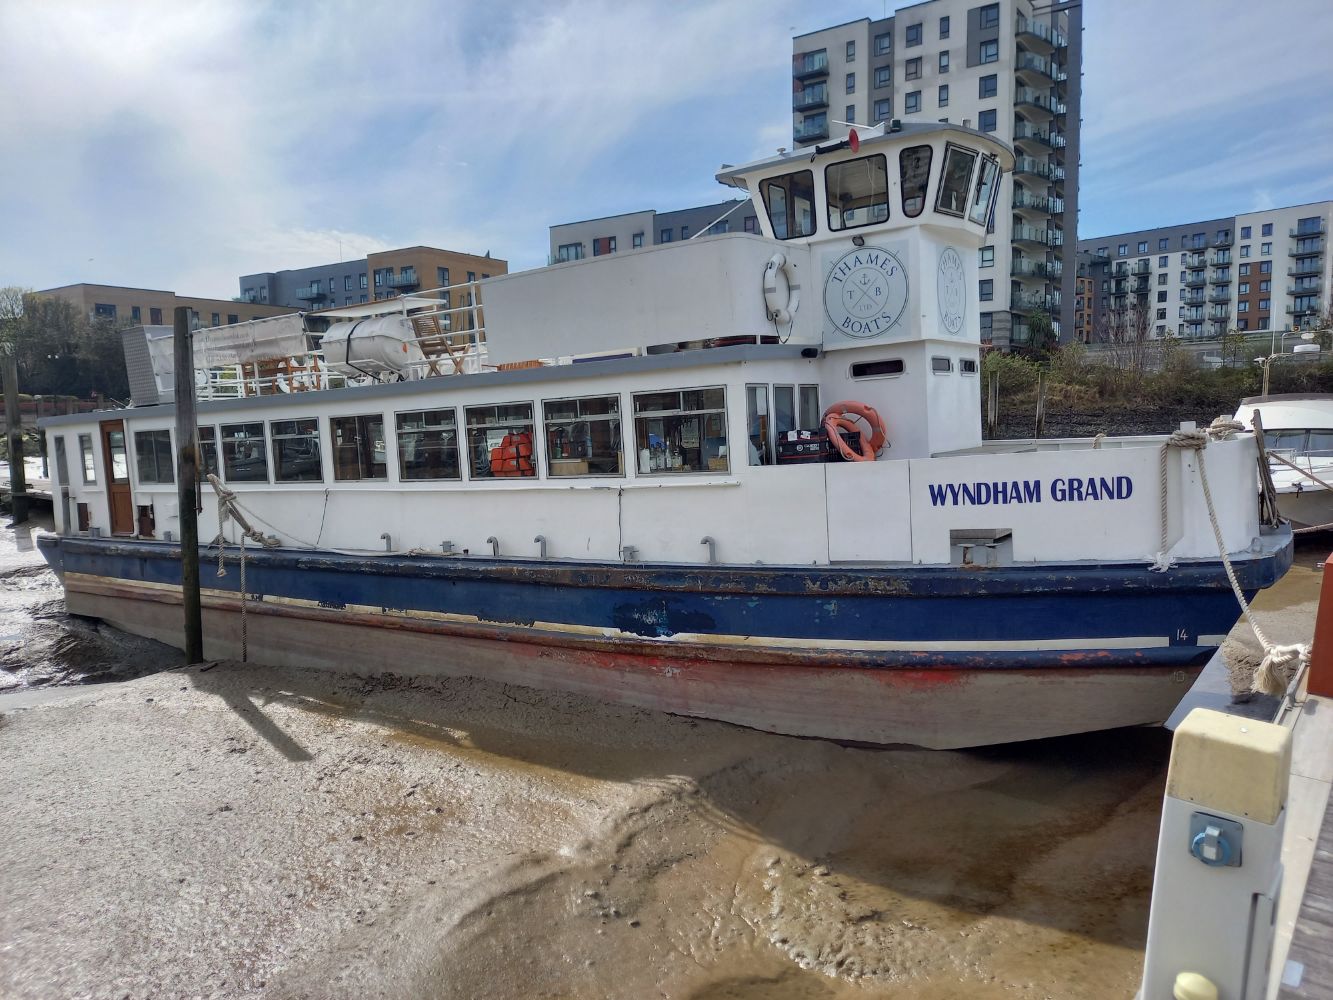 The Wyndham Grand - 90 Capacity Catamaran Pleasure Boat